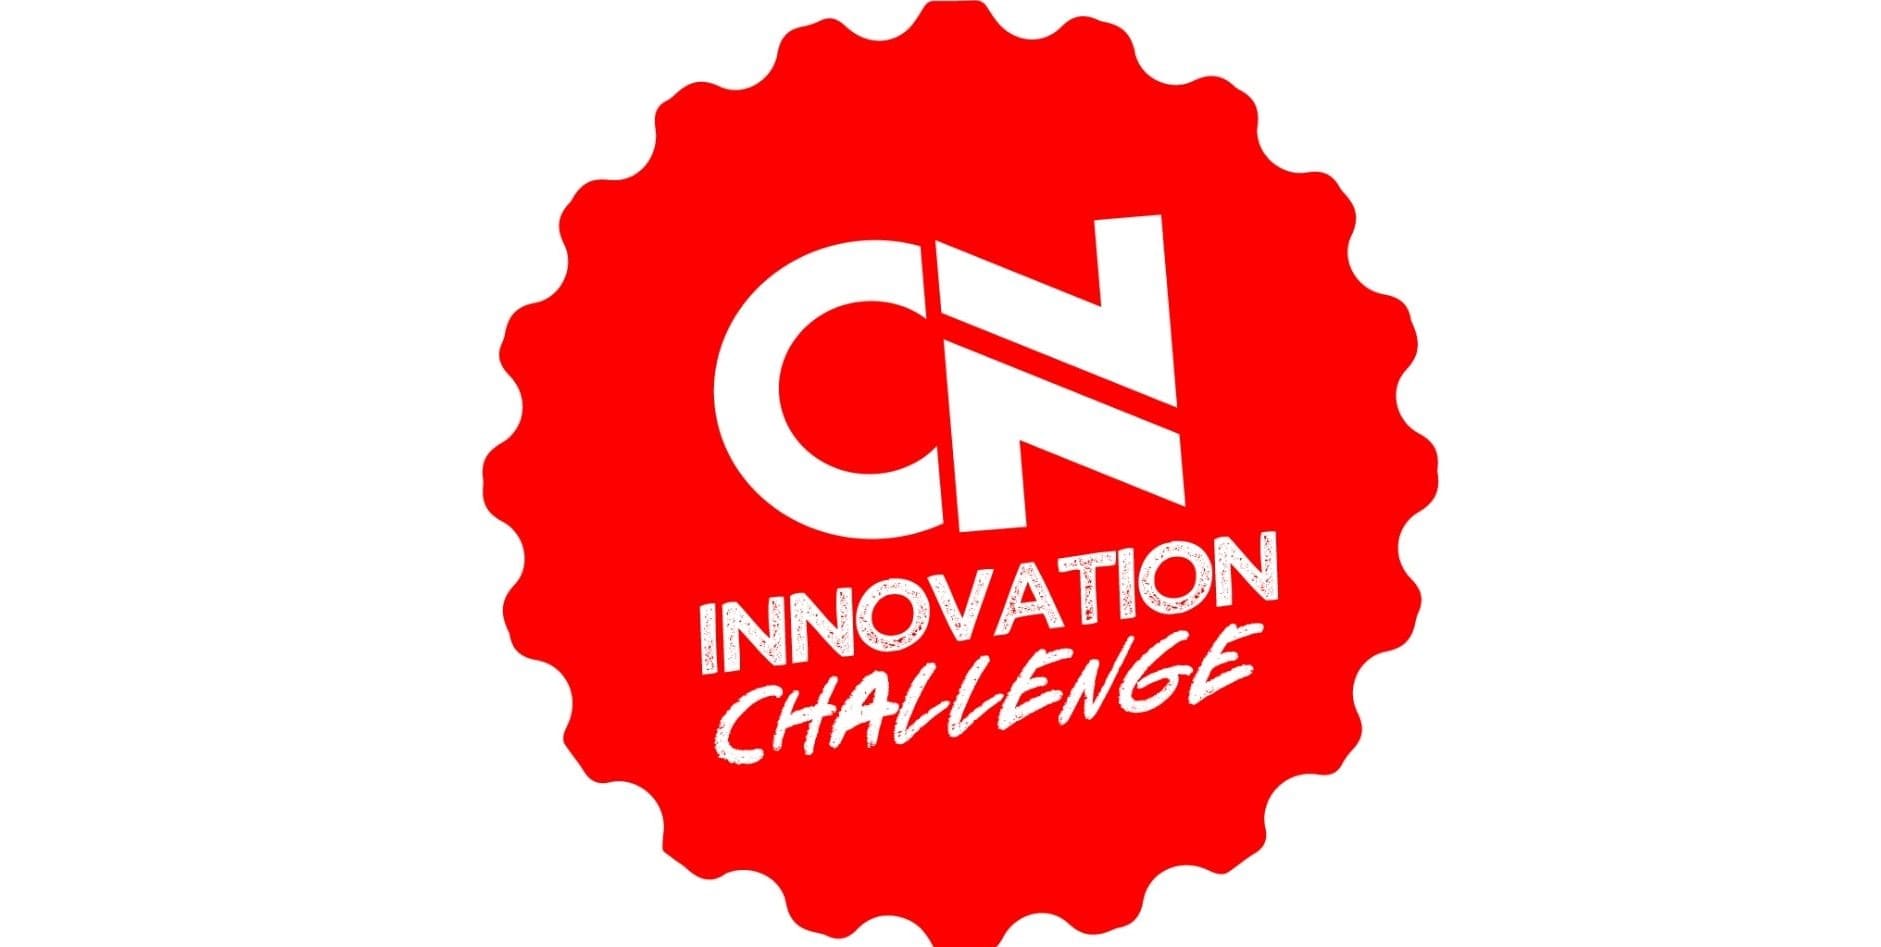 En este momento estás viendo “CN Innovation Challenge”, iniciativa que busca ideas innovadoras en estudiantes universitarios